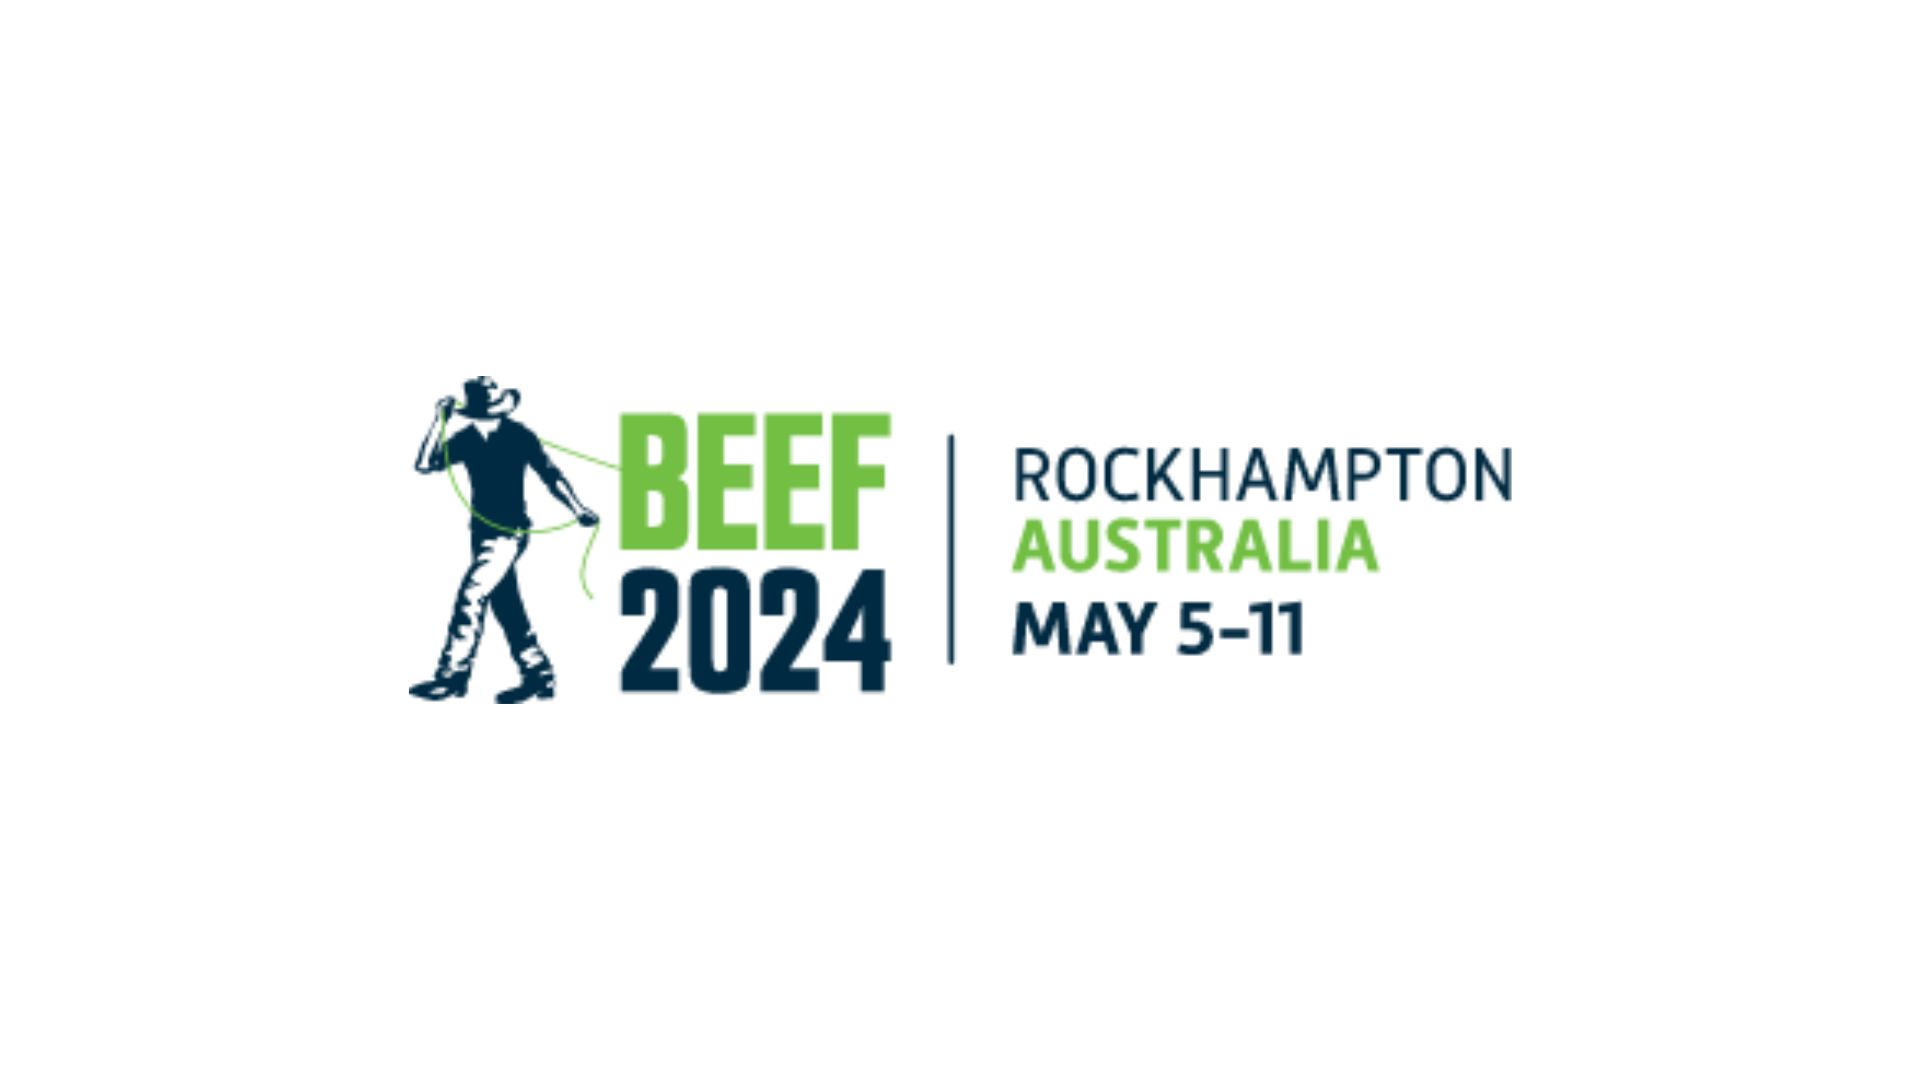 Beef 2024 